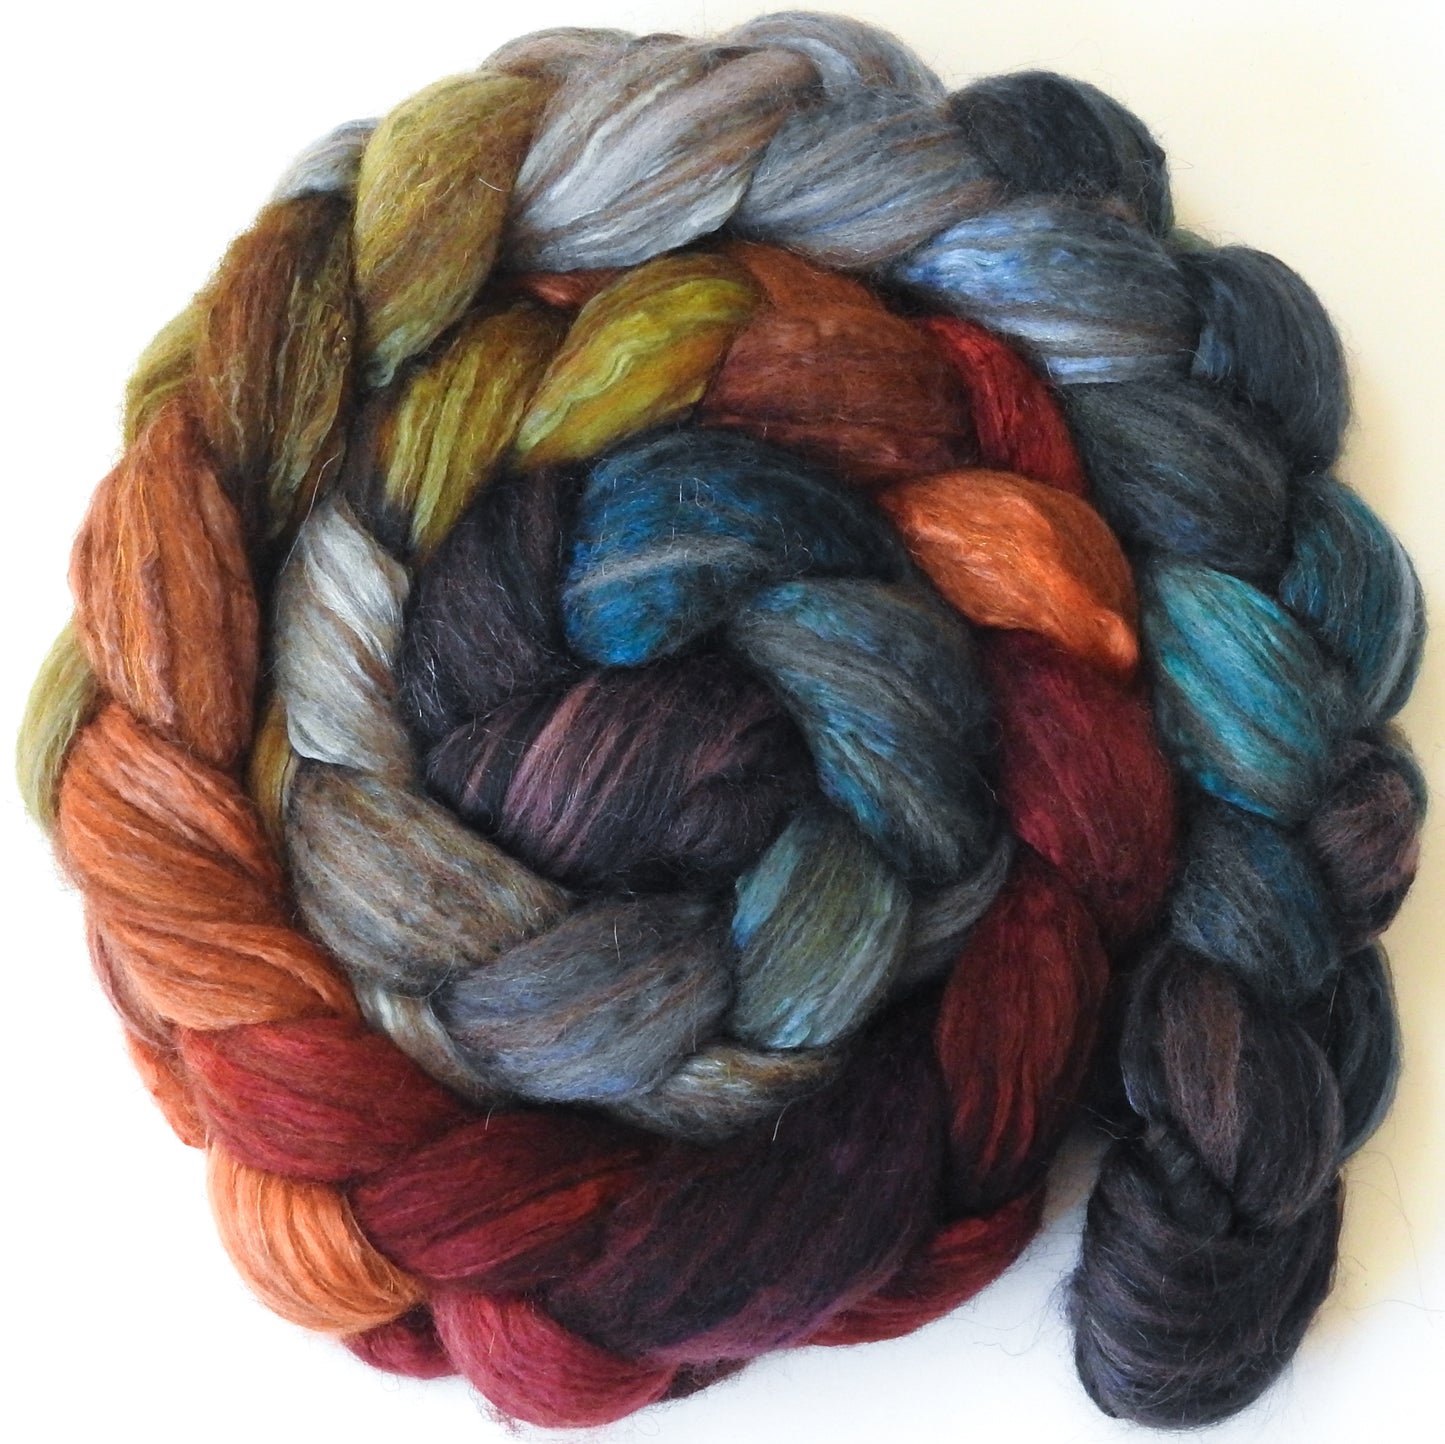 Midst of Fall (5.5 oz) - Batt in a Braid #7 - Polwarth/ Manx / Mulberry silk/ Firestar (30/30/30/10)